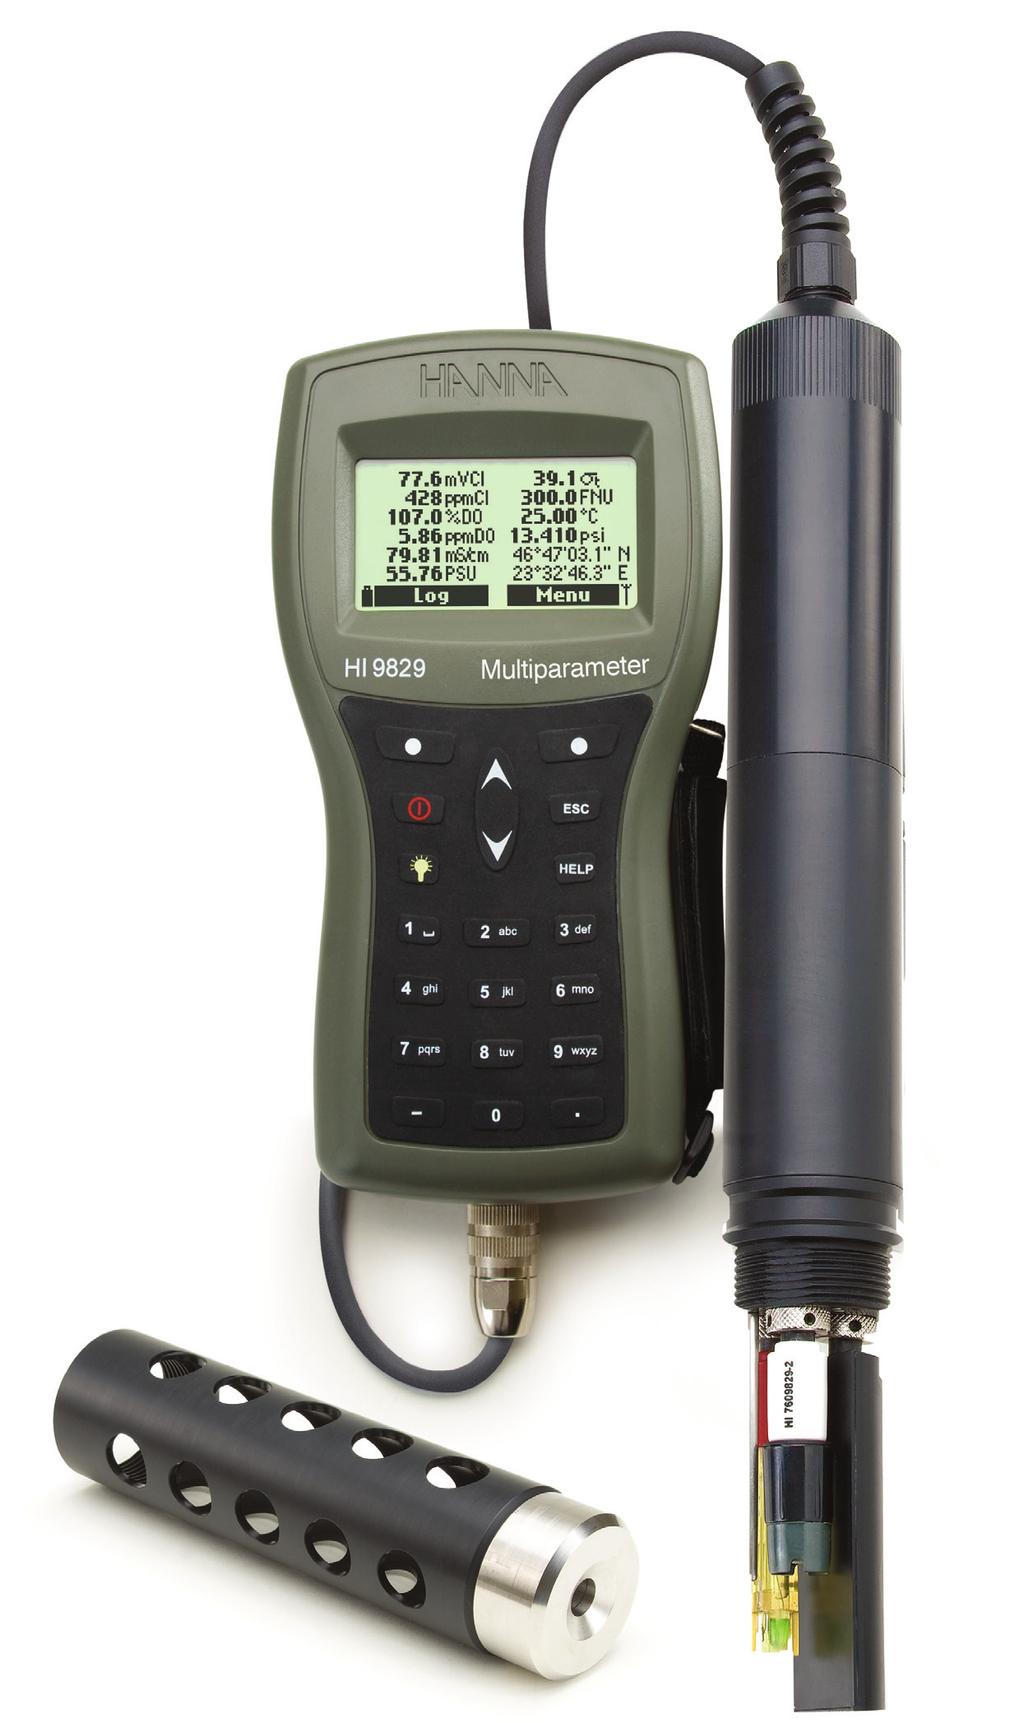 Strumento multiparametro portatile 17 parametri per la qualità dell acqua Un unico strumento portatile con GPS Robusto, a tenuta stagna e semplice da usare, è lo strumento portatile ideale per